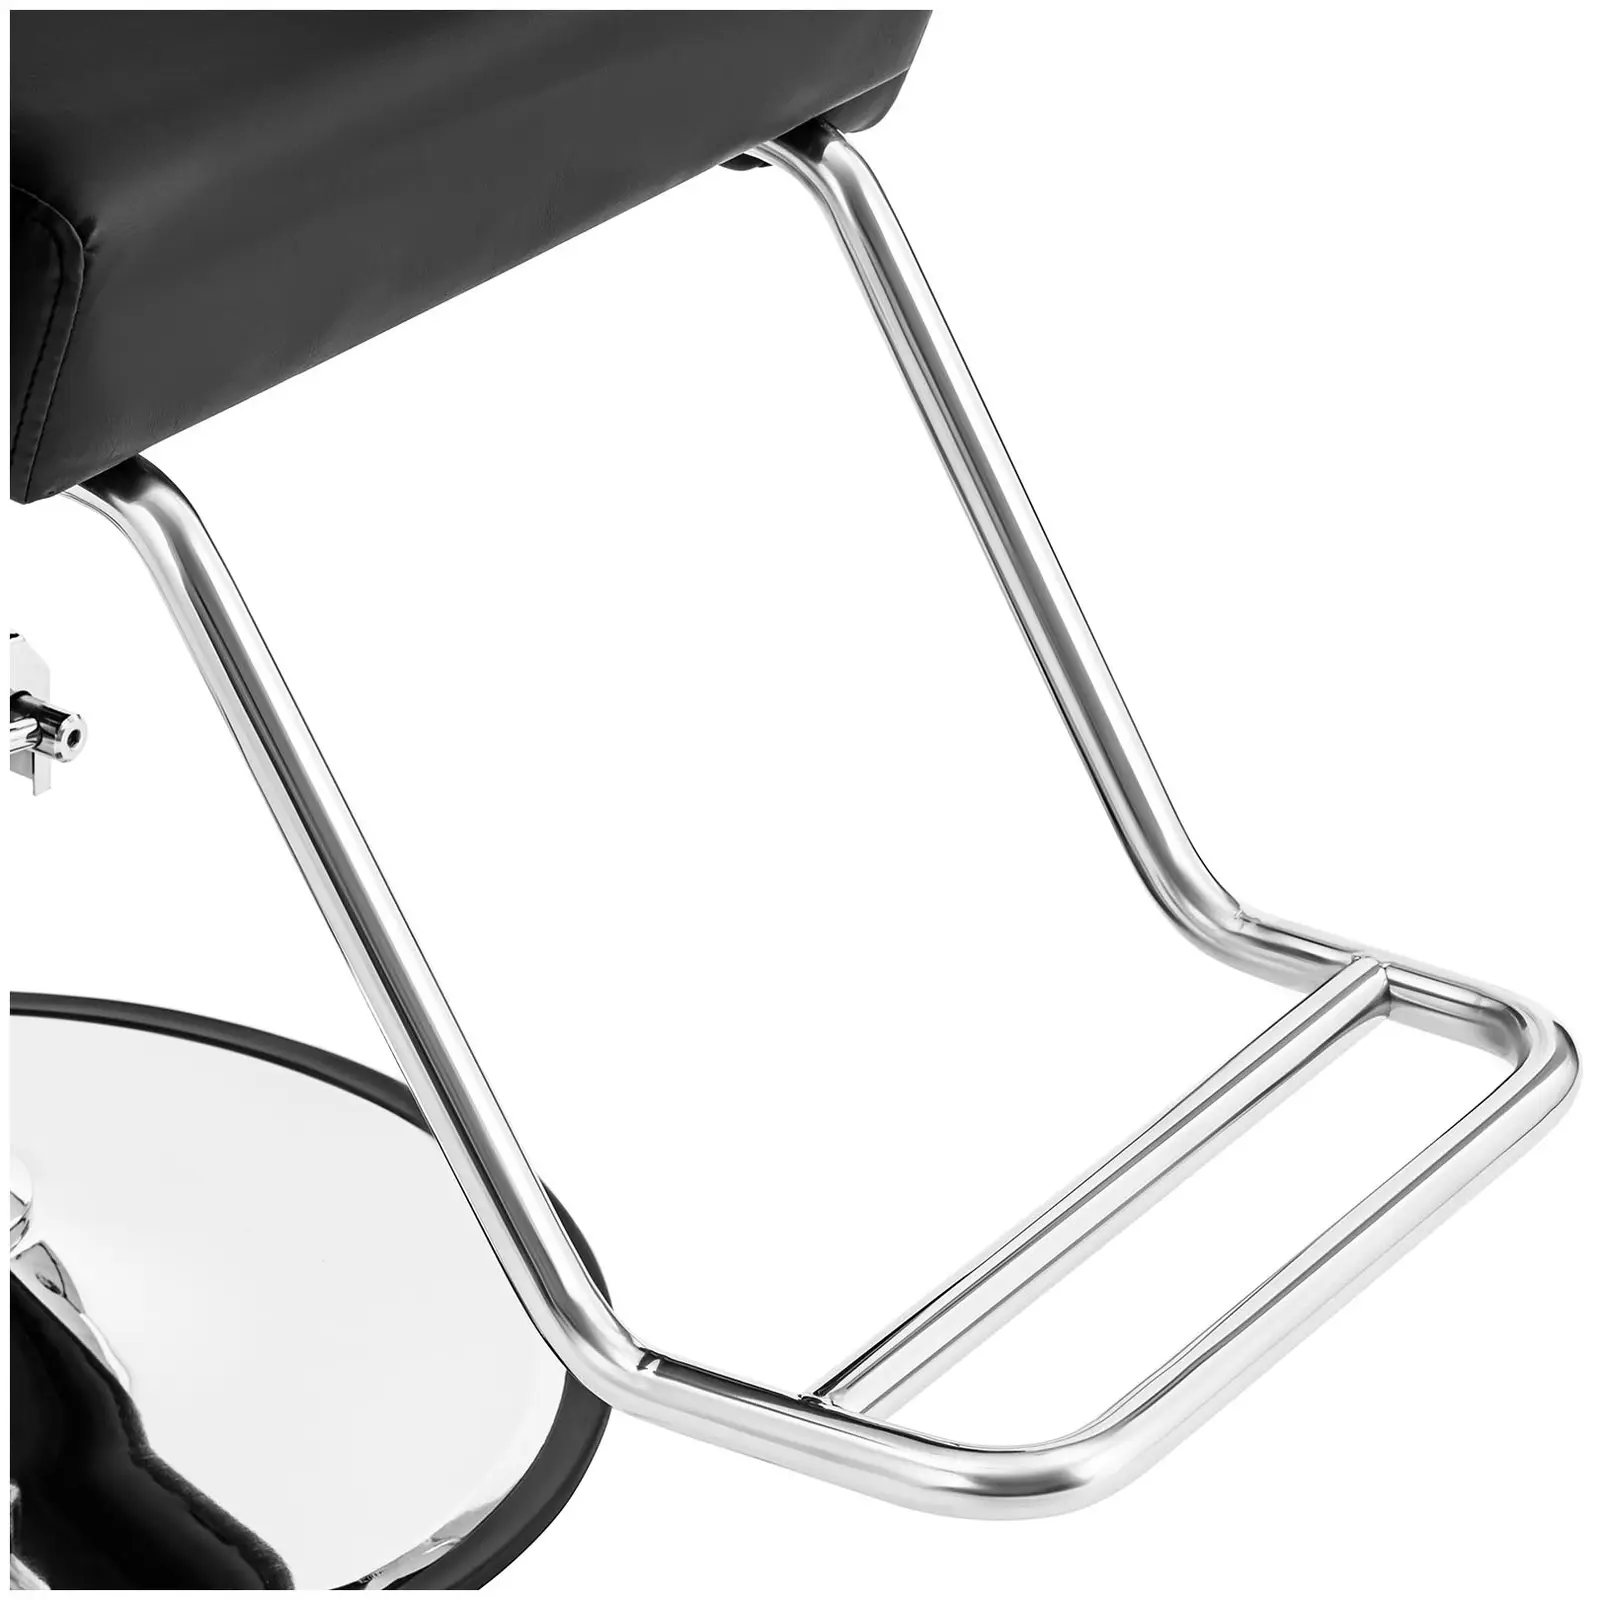 kappersstoel met voetsteun - 990 - 1140 mm - 200 kg - Zwart, Zilver